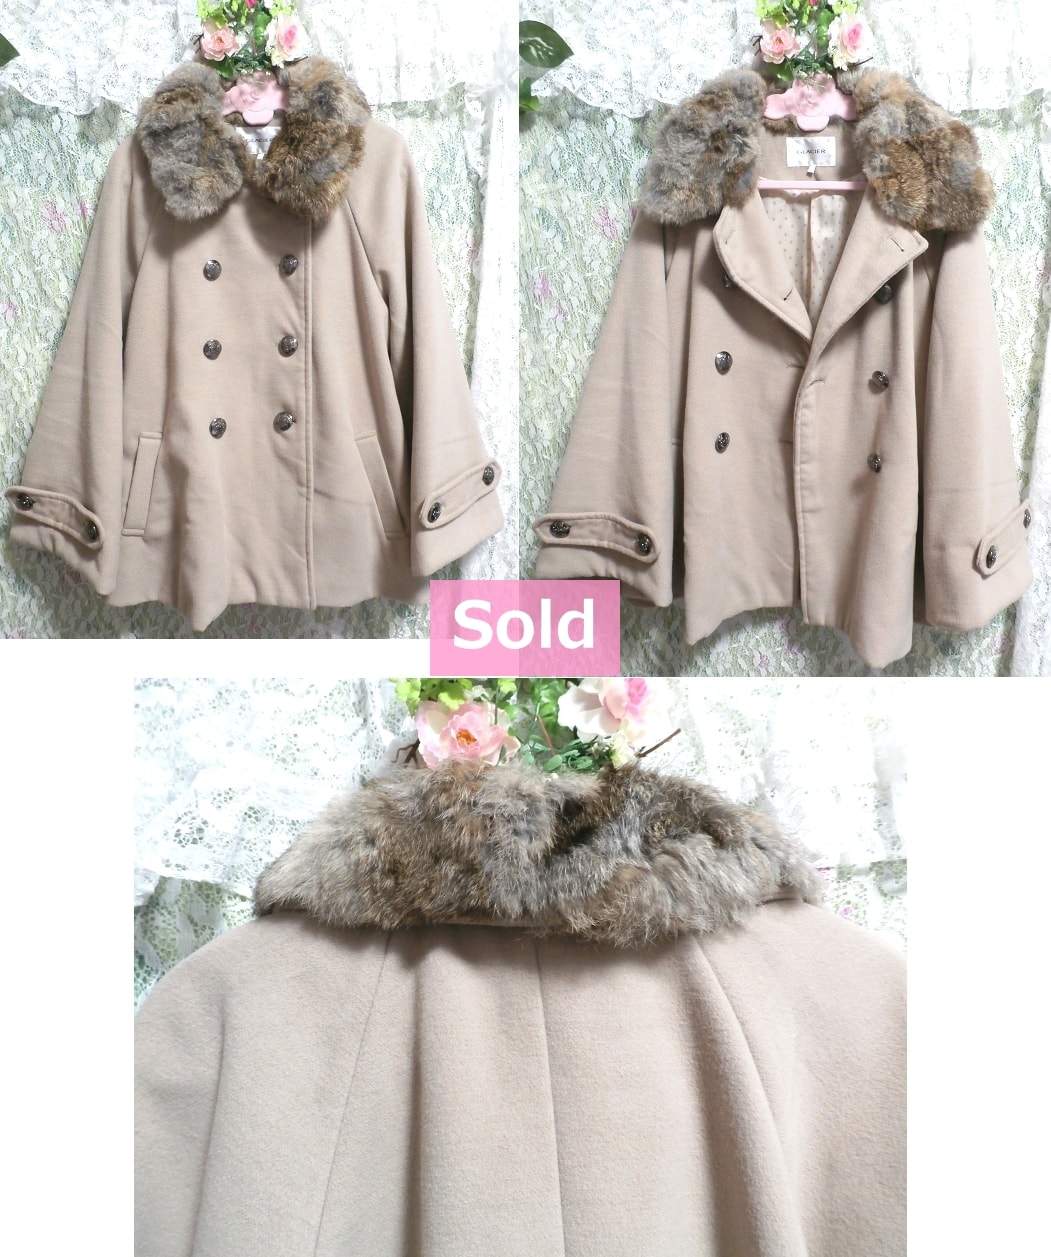 可愛いベージュピンクのラビットふわふわポンチョ風ファーコート/外套 Cute beige pink rabbit fluffy poncho style fur coat